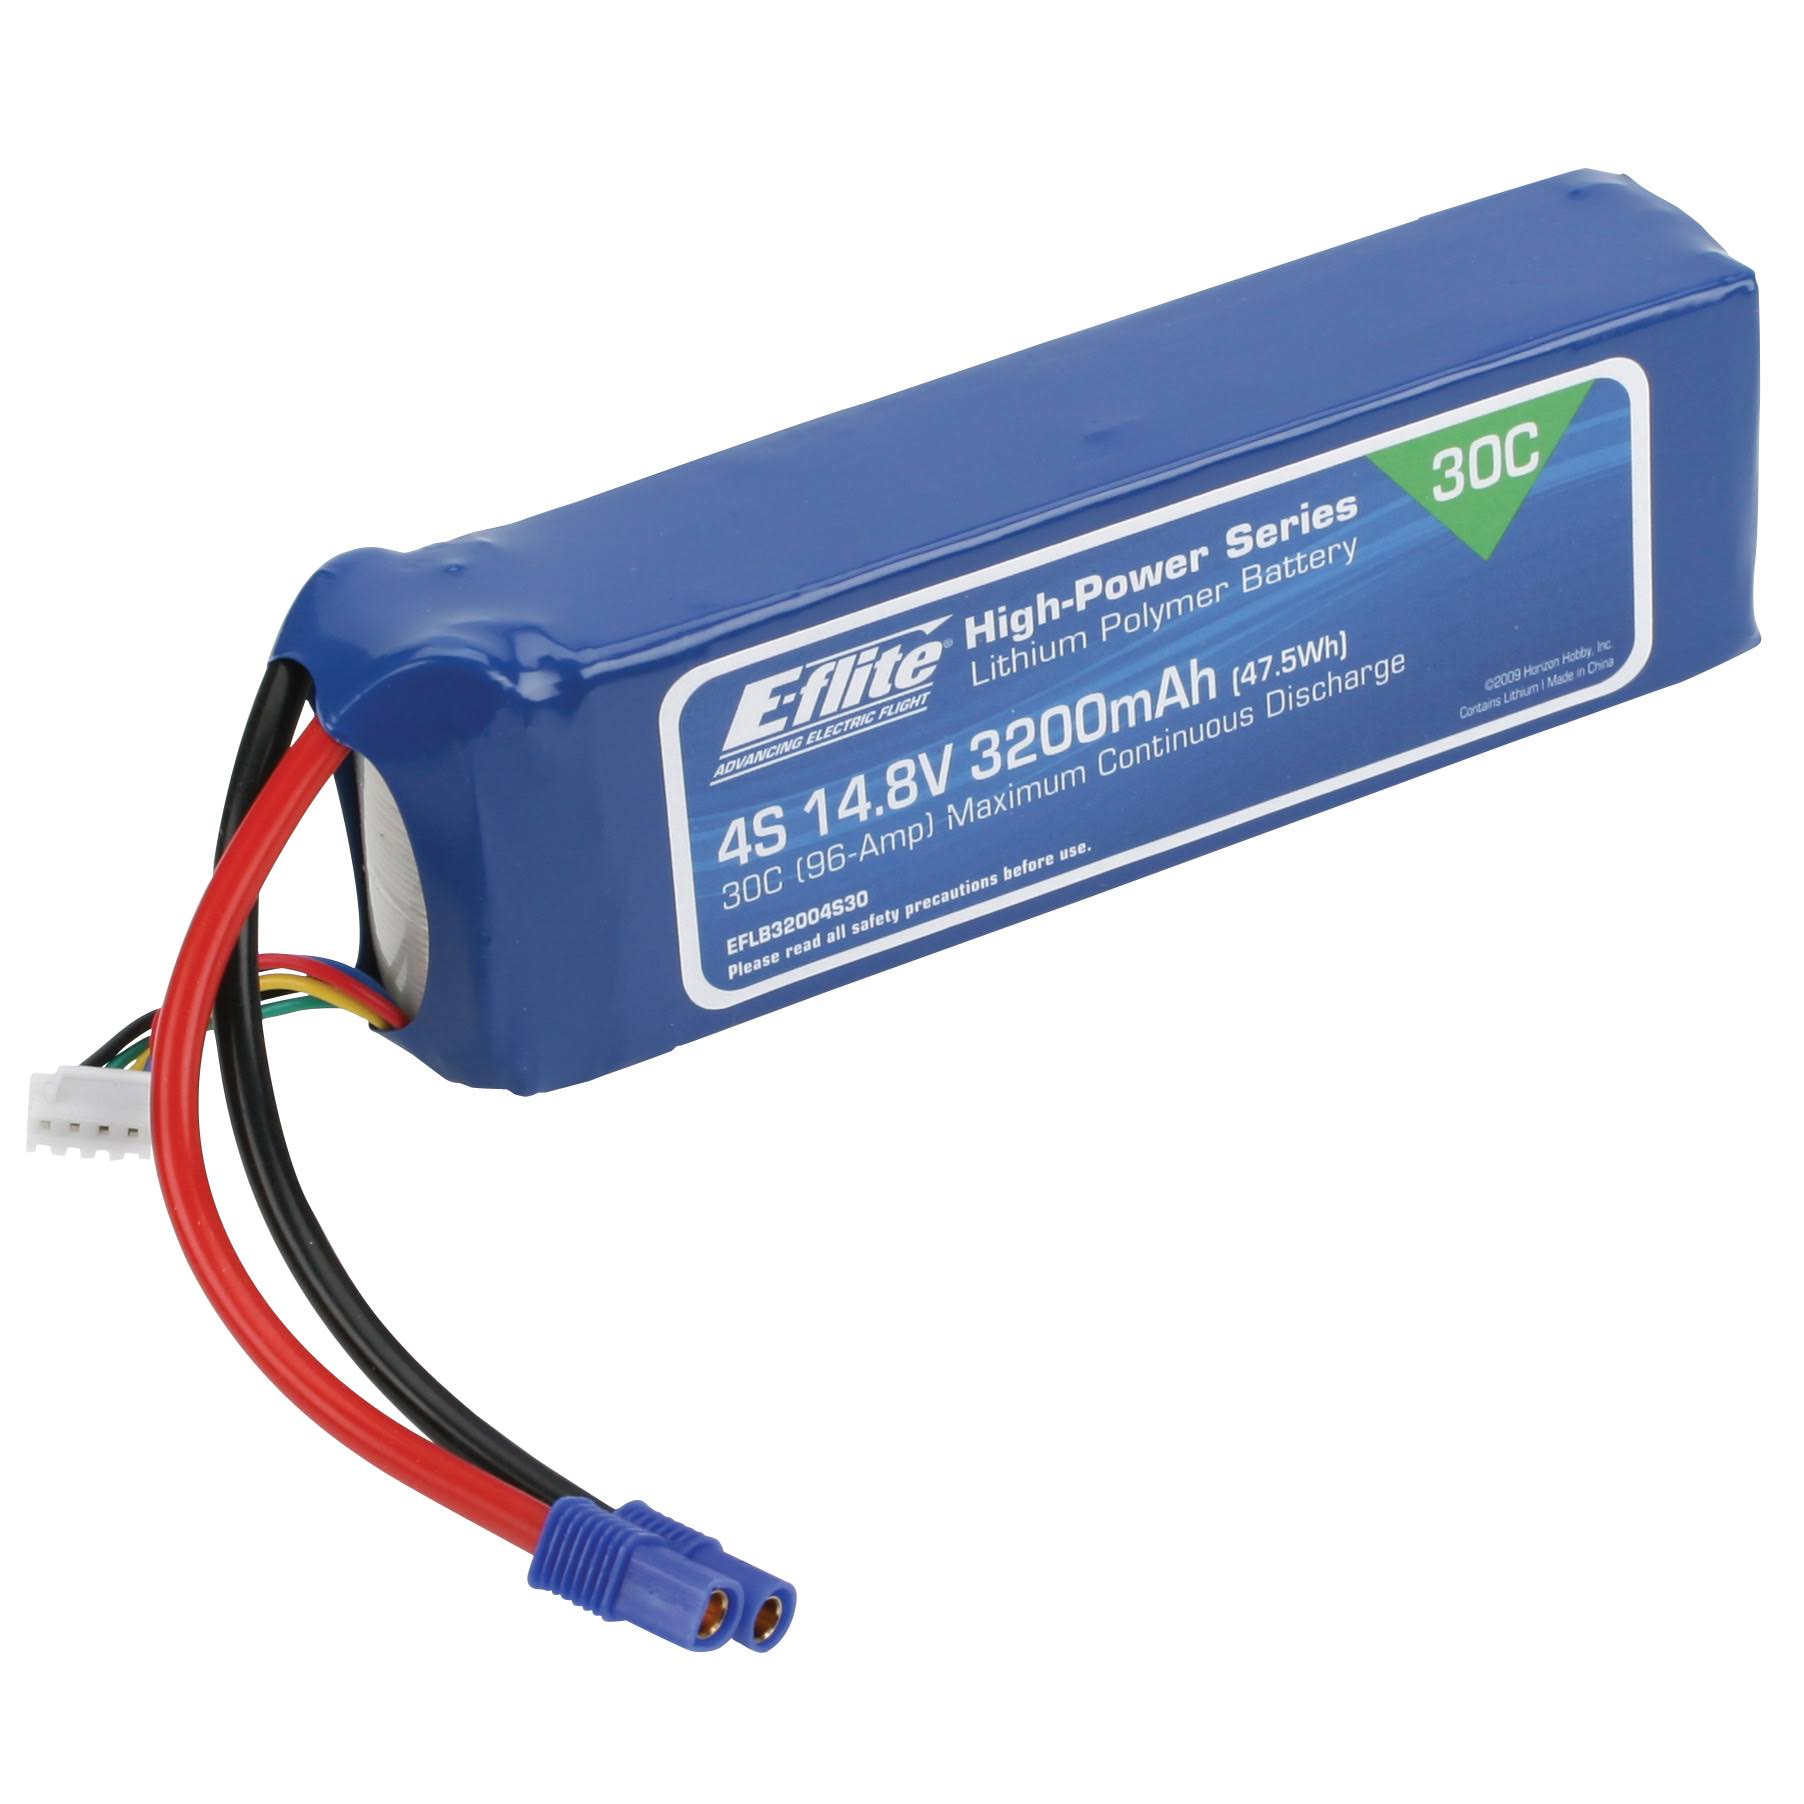 E Flite Lipo Battery - 3200mah, 4S, 14.8V, 30C